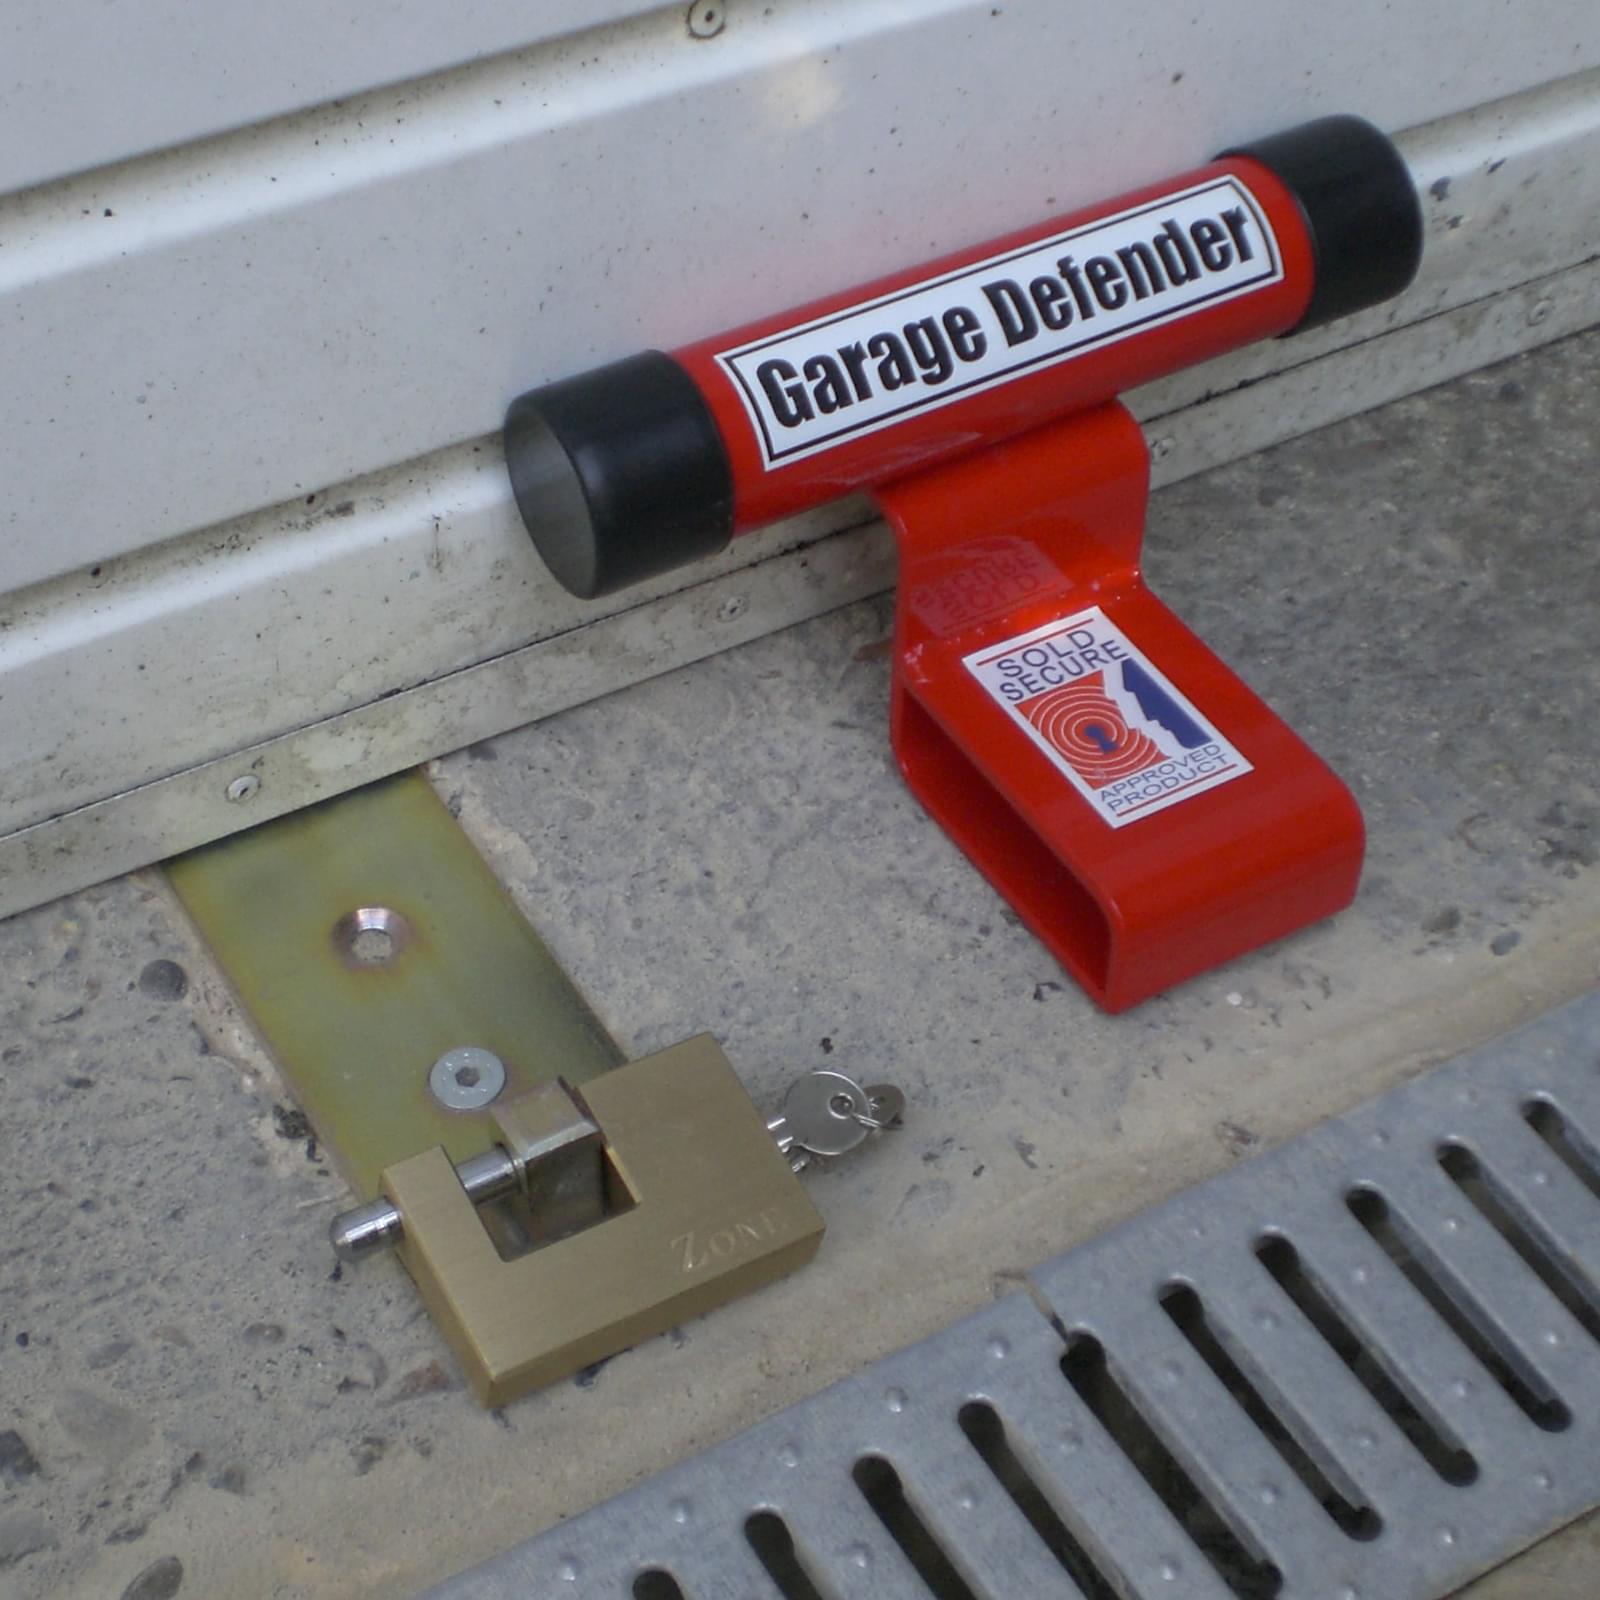 How To Lock A Garage Door | Storables